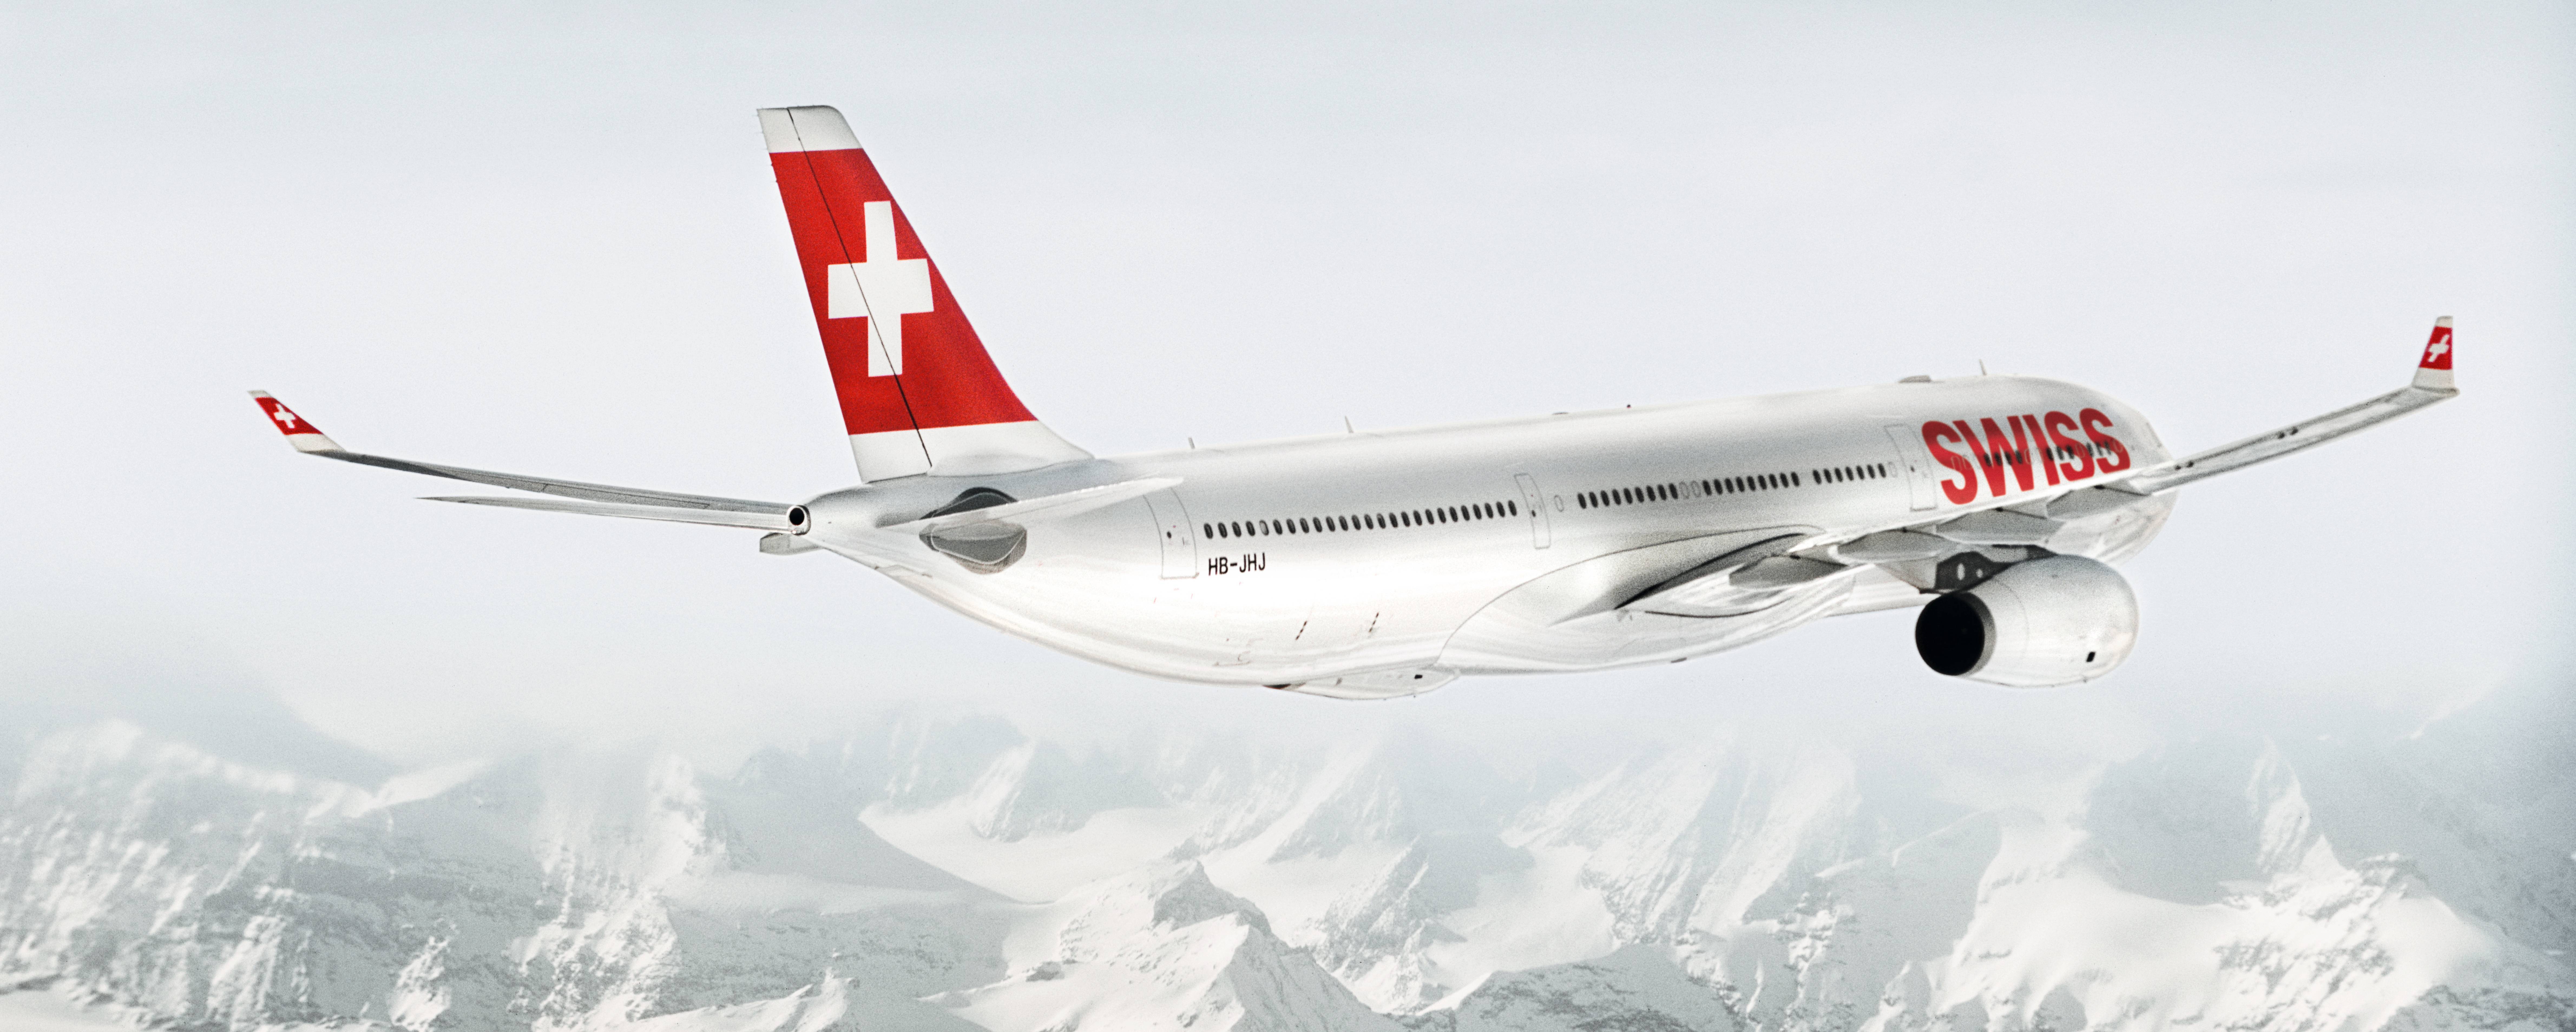 Swiss airlines: как зарегистрироваться на рейс онлайн и в аэропорту